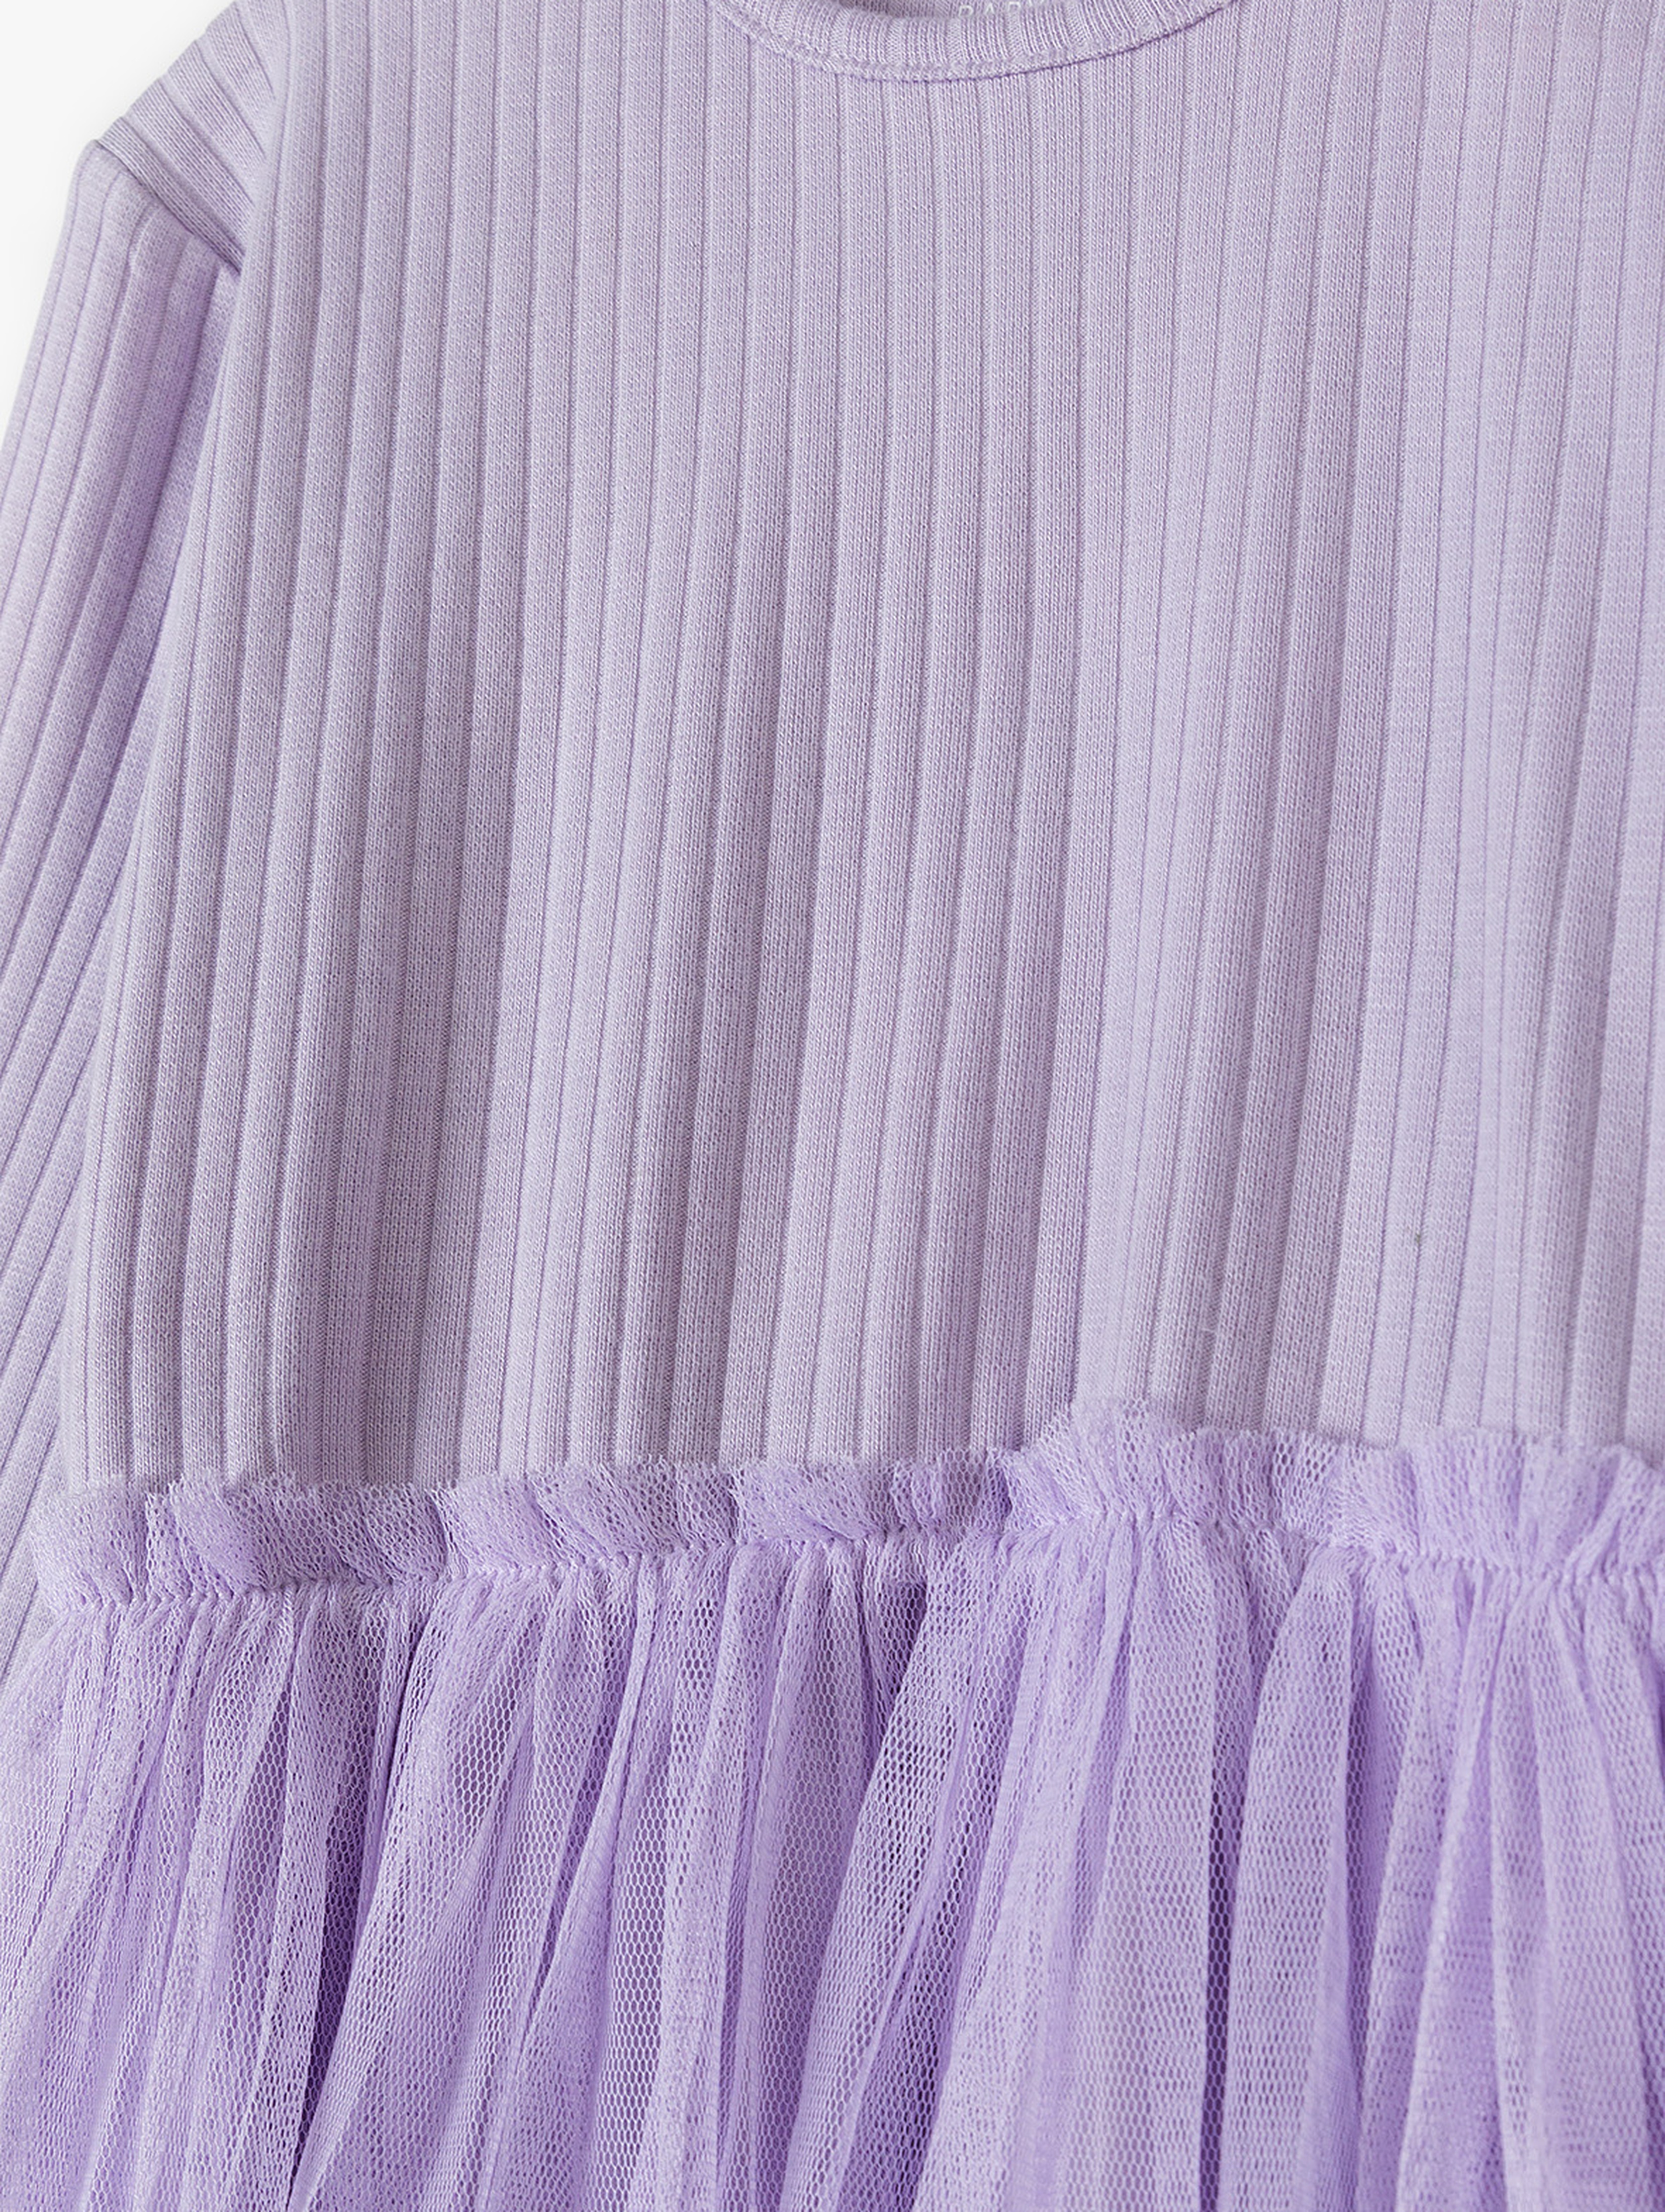 Fioletowa sukienka dla niemowlaka - długi rękaw - 5.10.15.